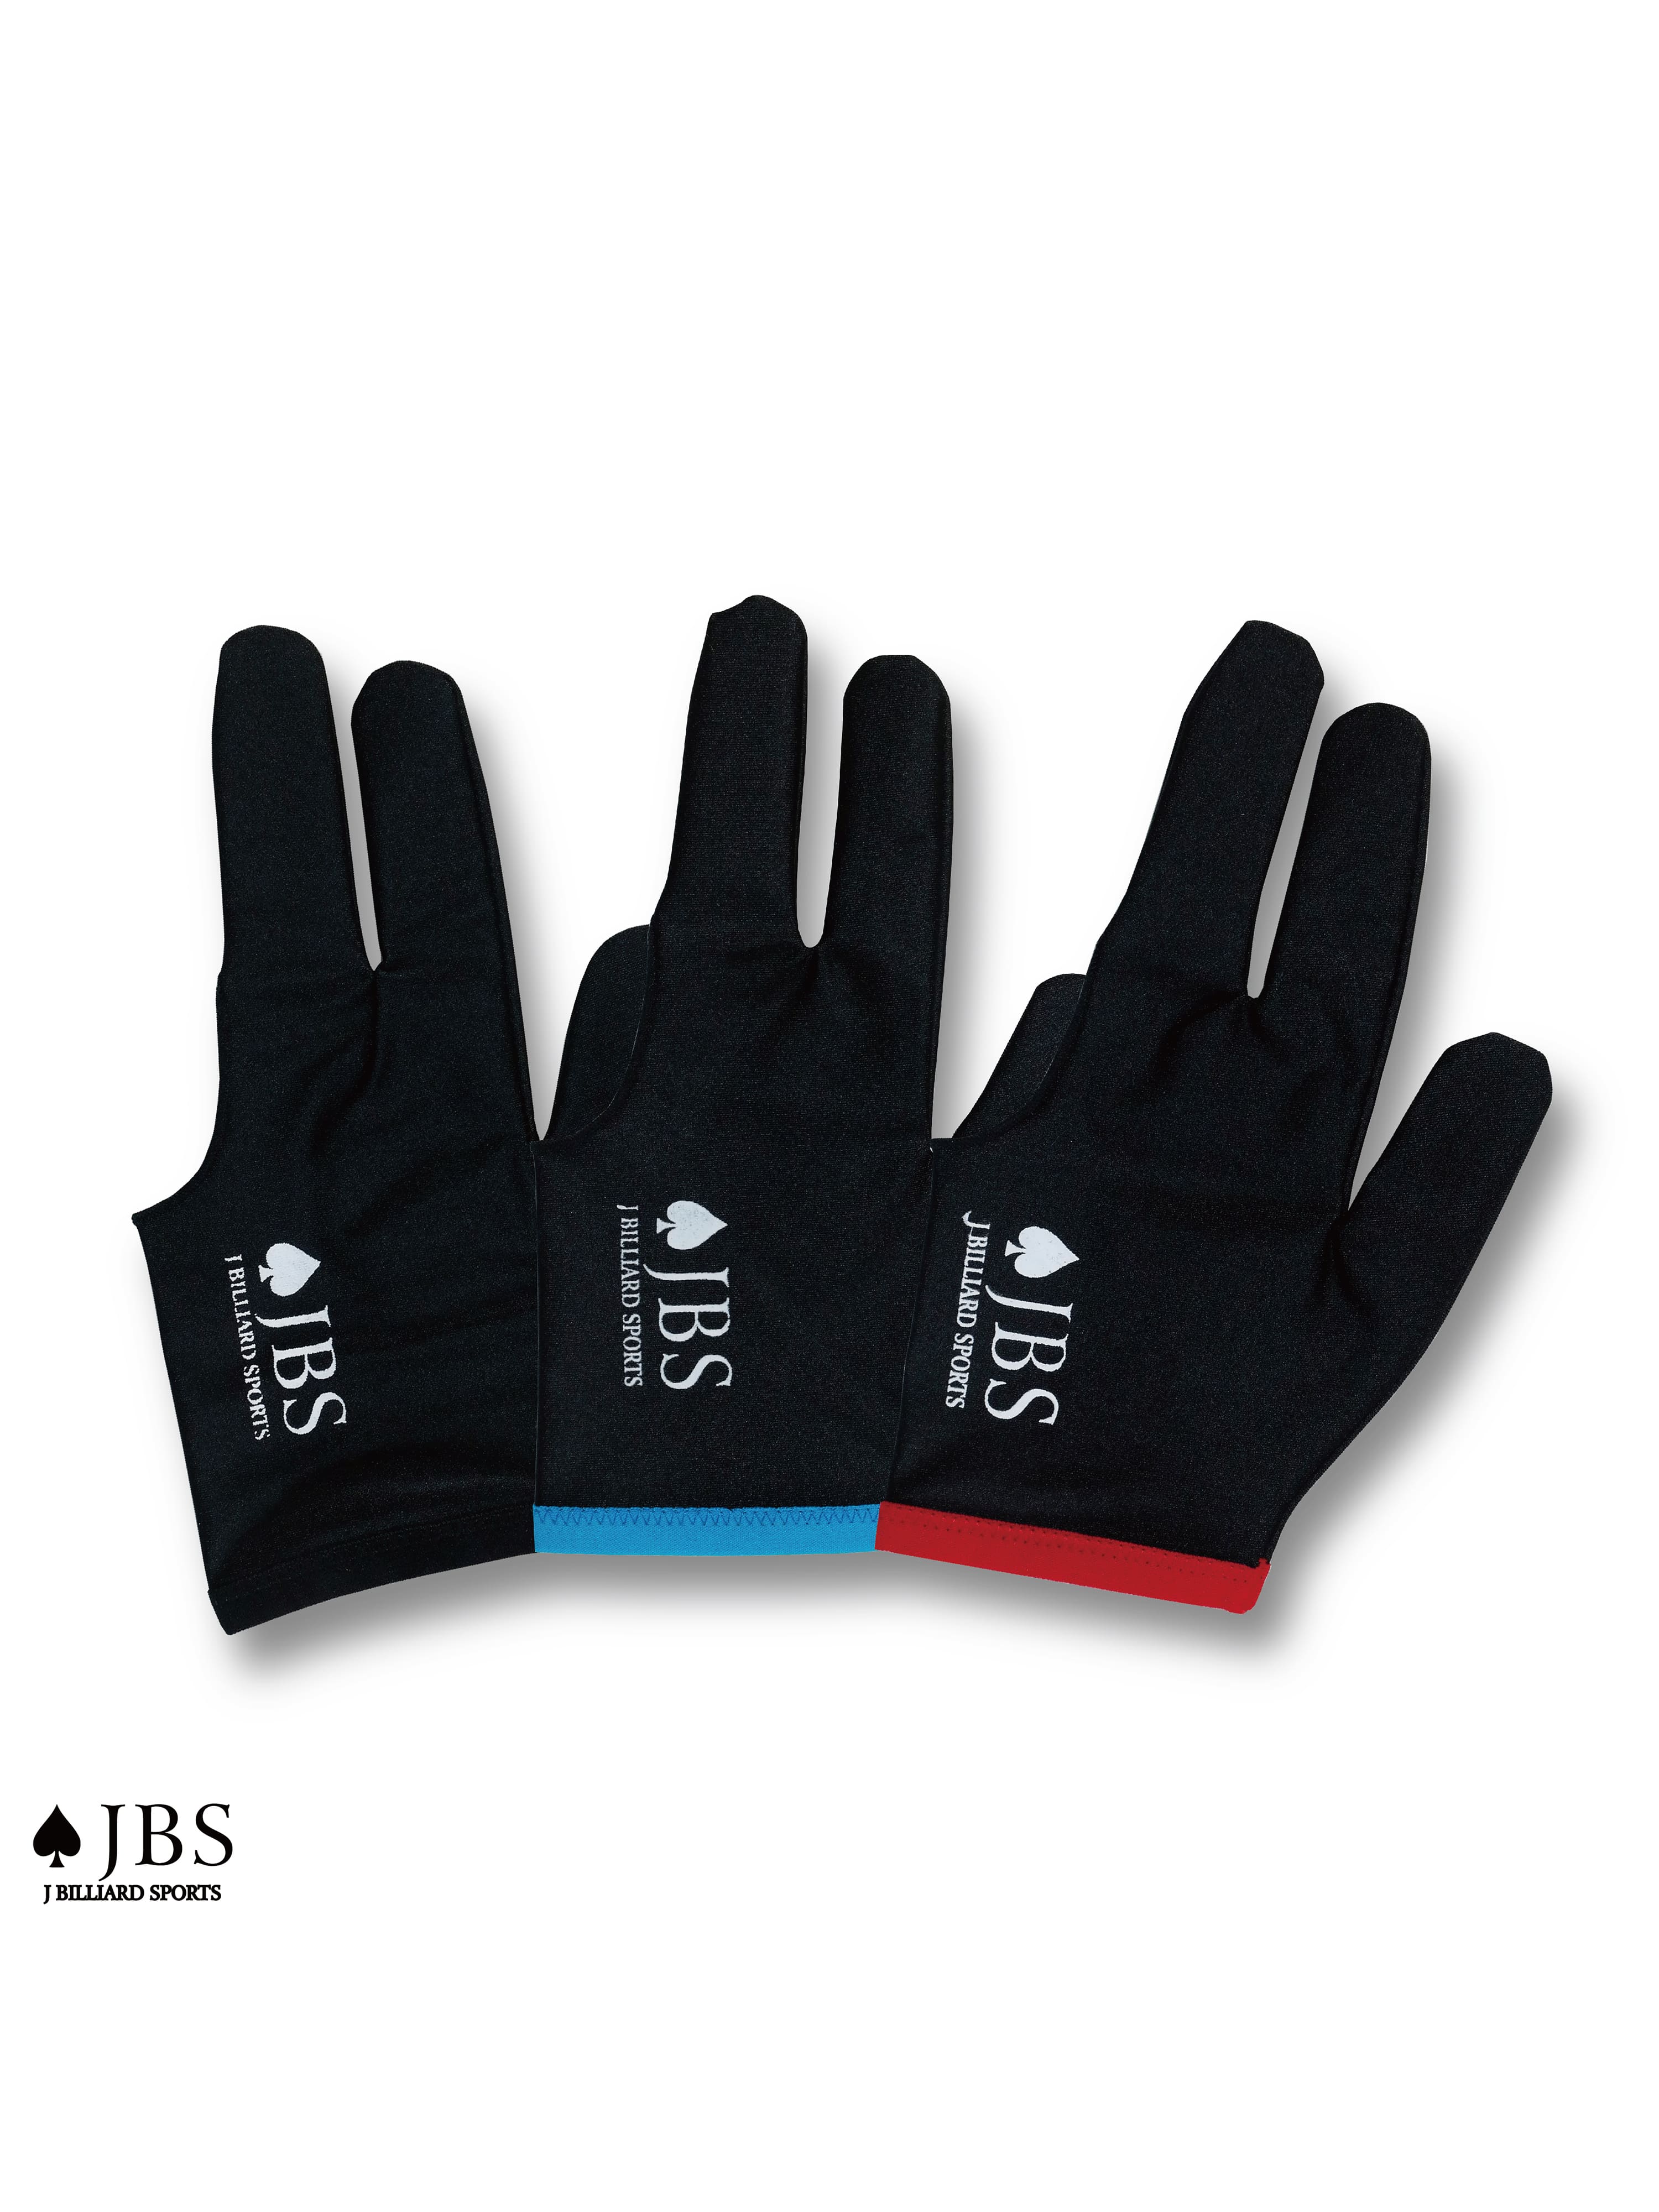 ♠JBS Club Glove